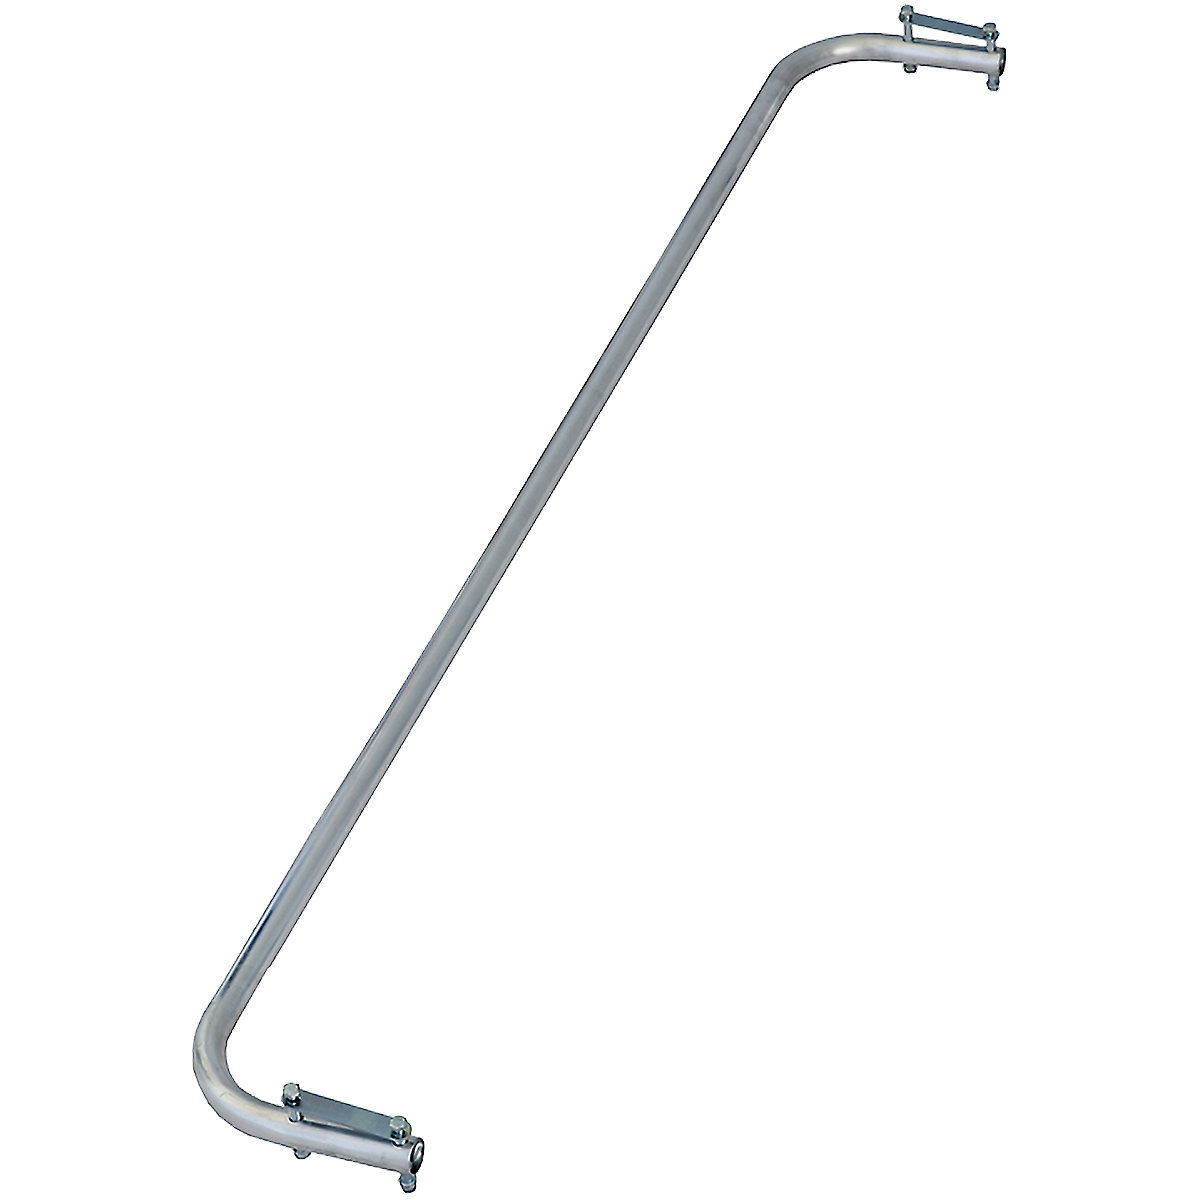 Aluminijski rukohvat – KRAUSE, za ljestve za naslanjanje sa stepenicama, 8 – 10 stepenica, težina 1,02 kg